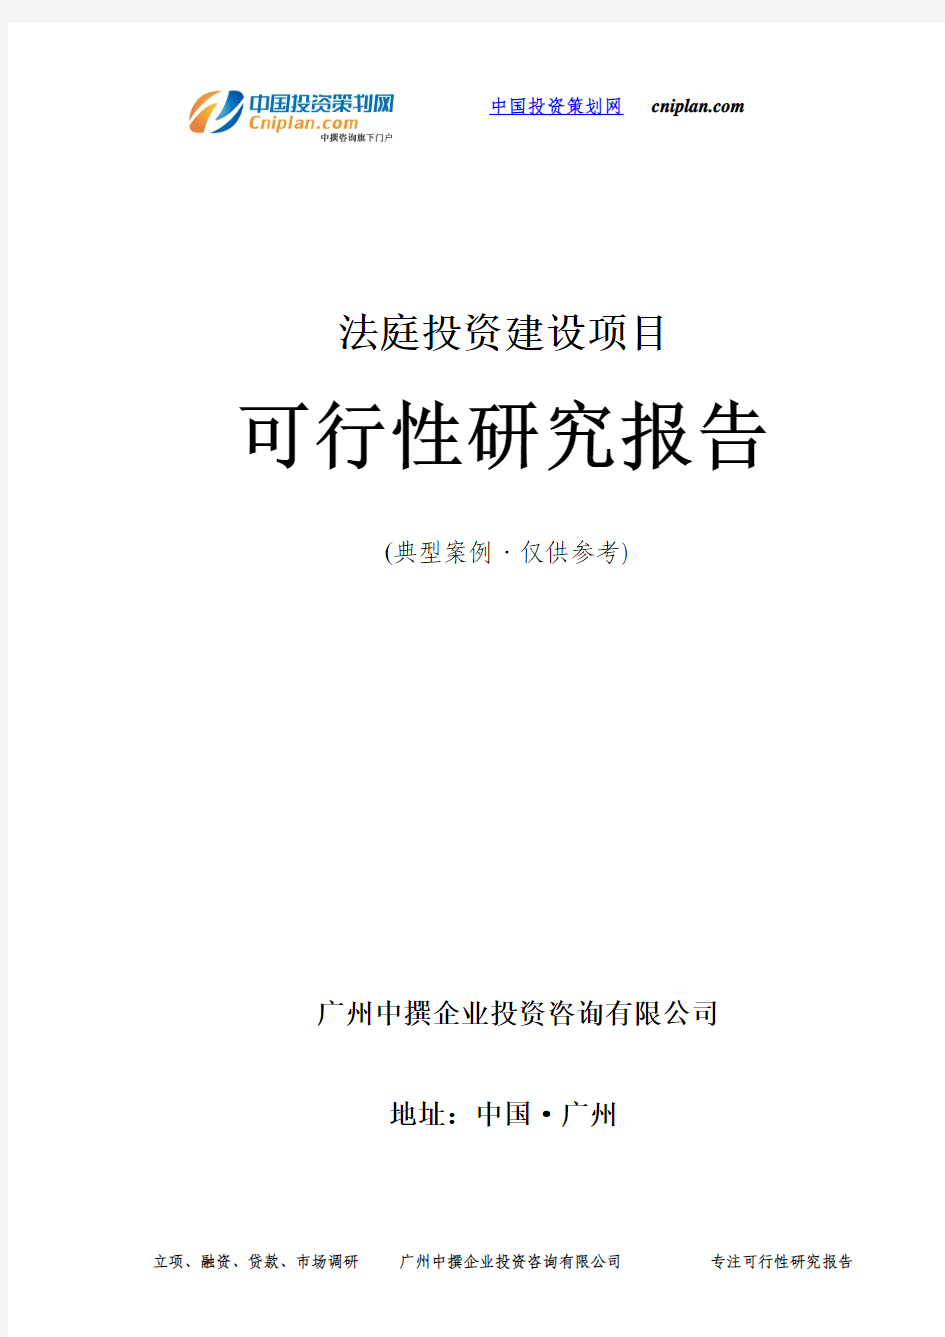 法庭投资建设项目可行性研究报告-广州中撰咨询